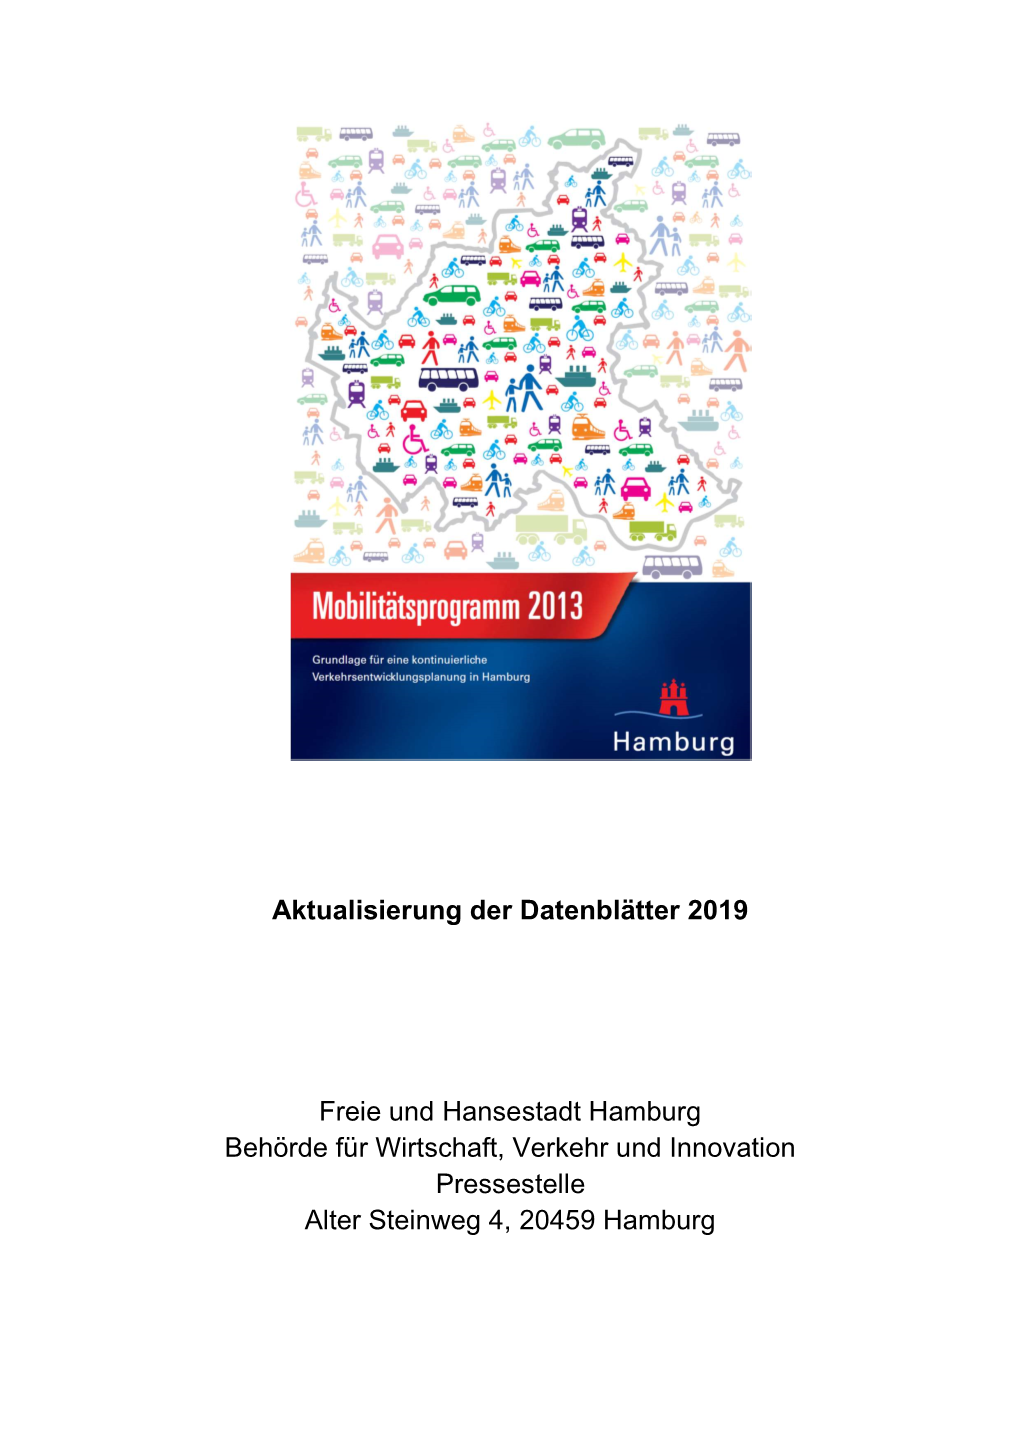 Mobilitätsprogramm 2013 – Aktualisierung Der Datenblätter, Stand 2019